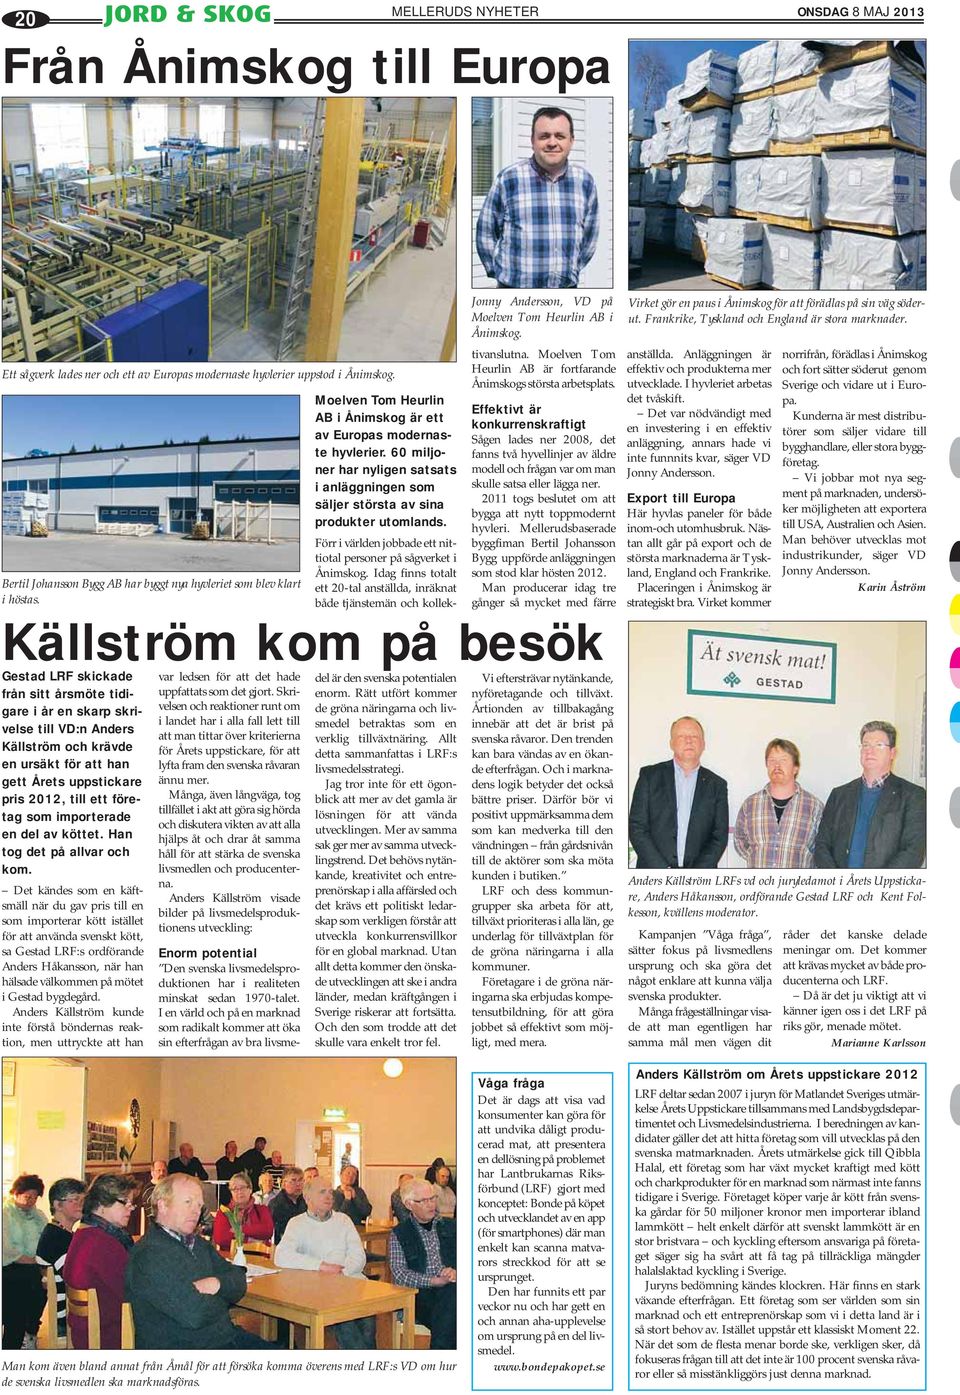 60 miljoner har nyligen satsats i anläggningen som säljer största av sina produkter utomlands. Förr i världen jobbade ett nittiotal personer på sågverket i Ånimskog.